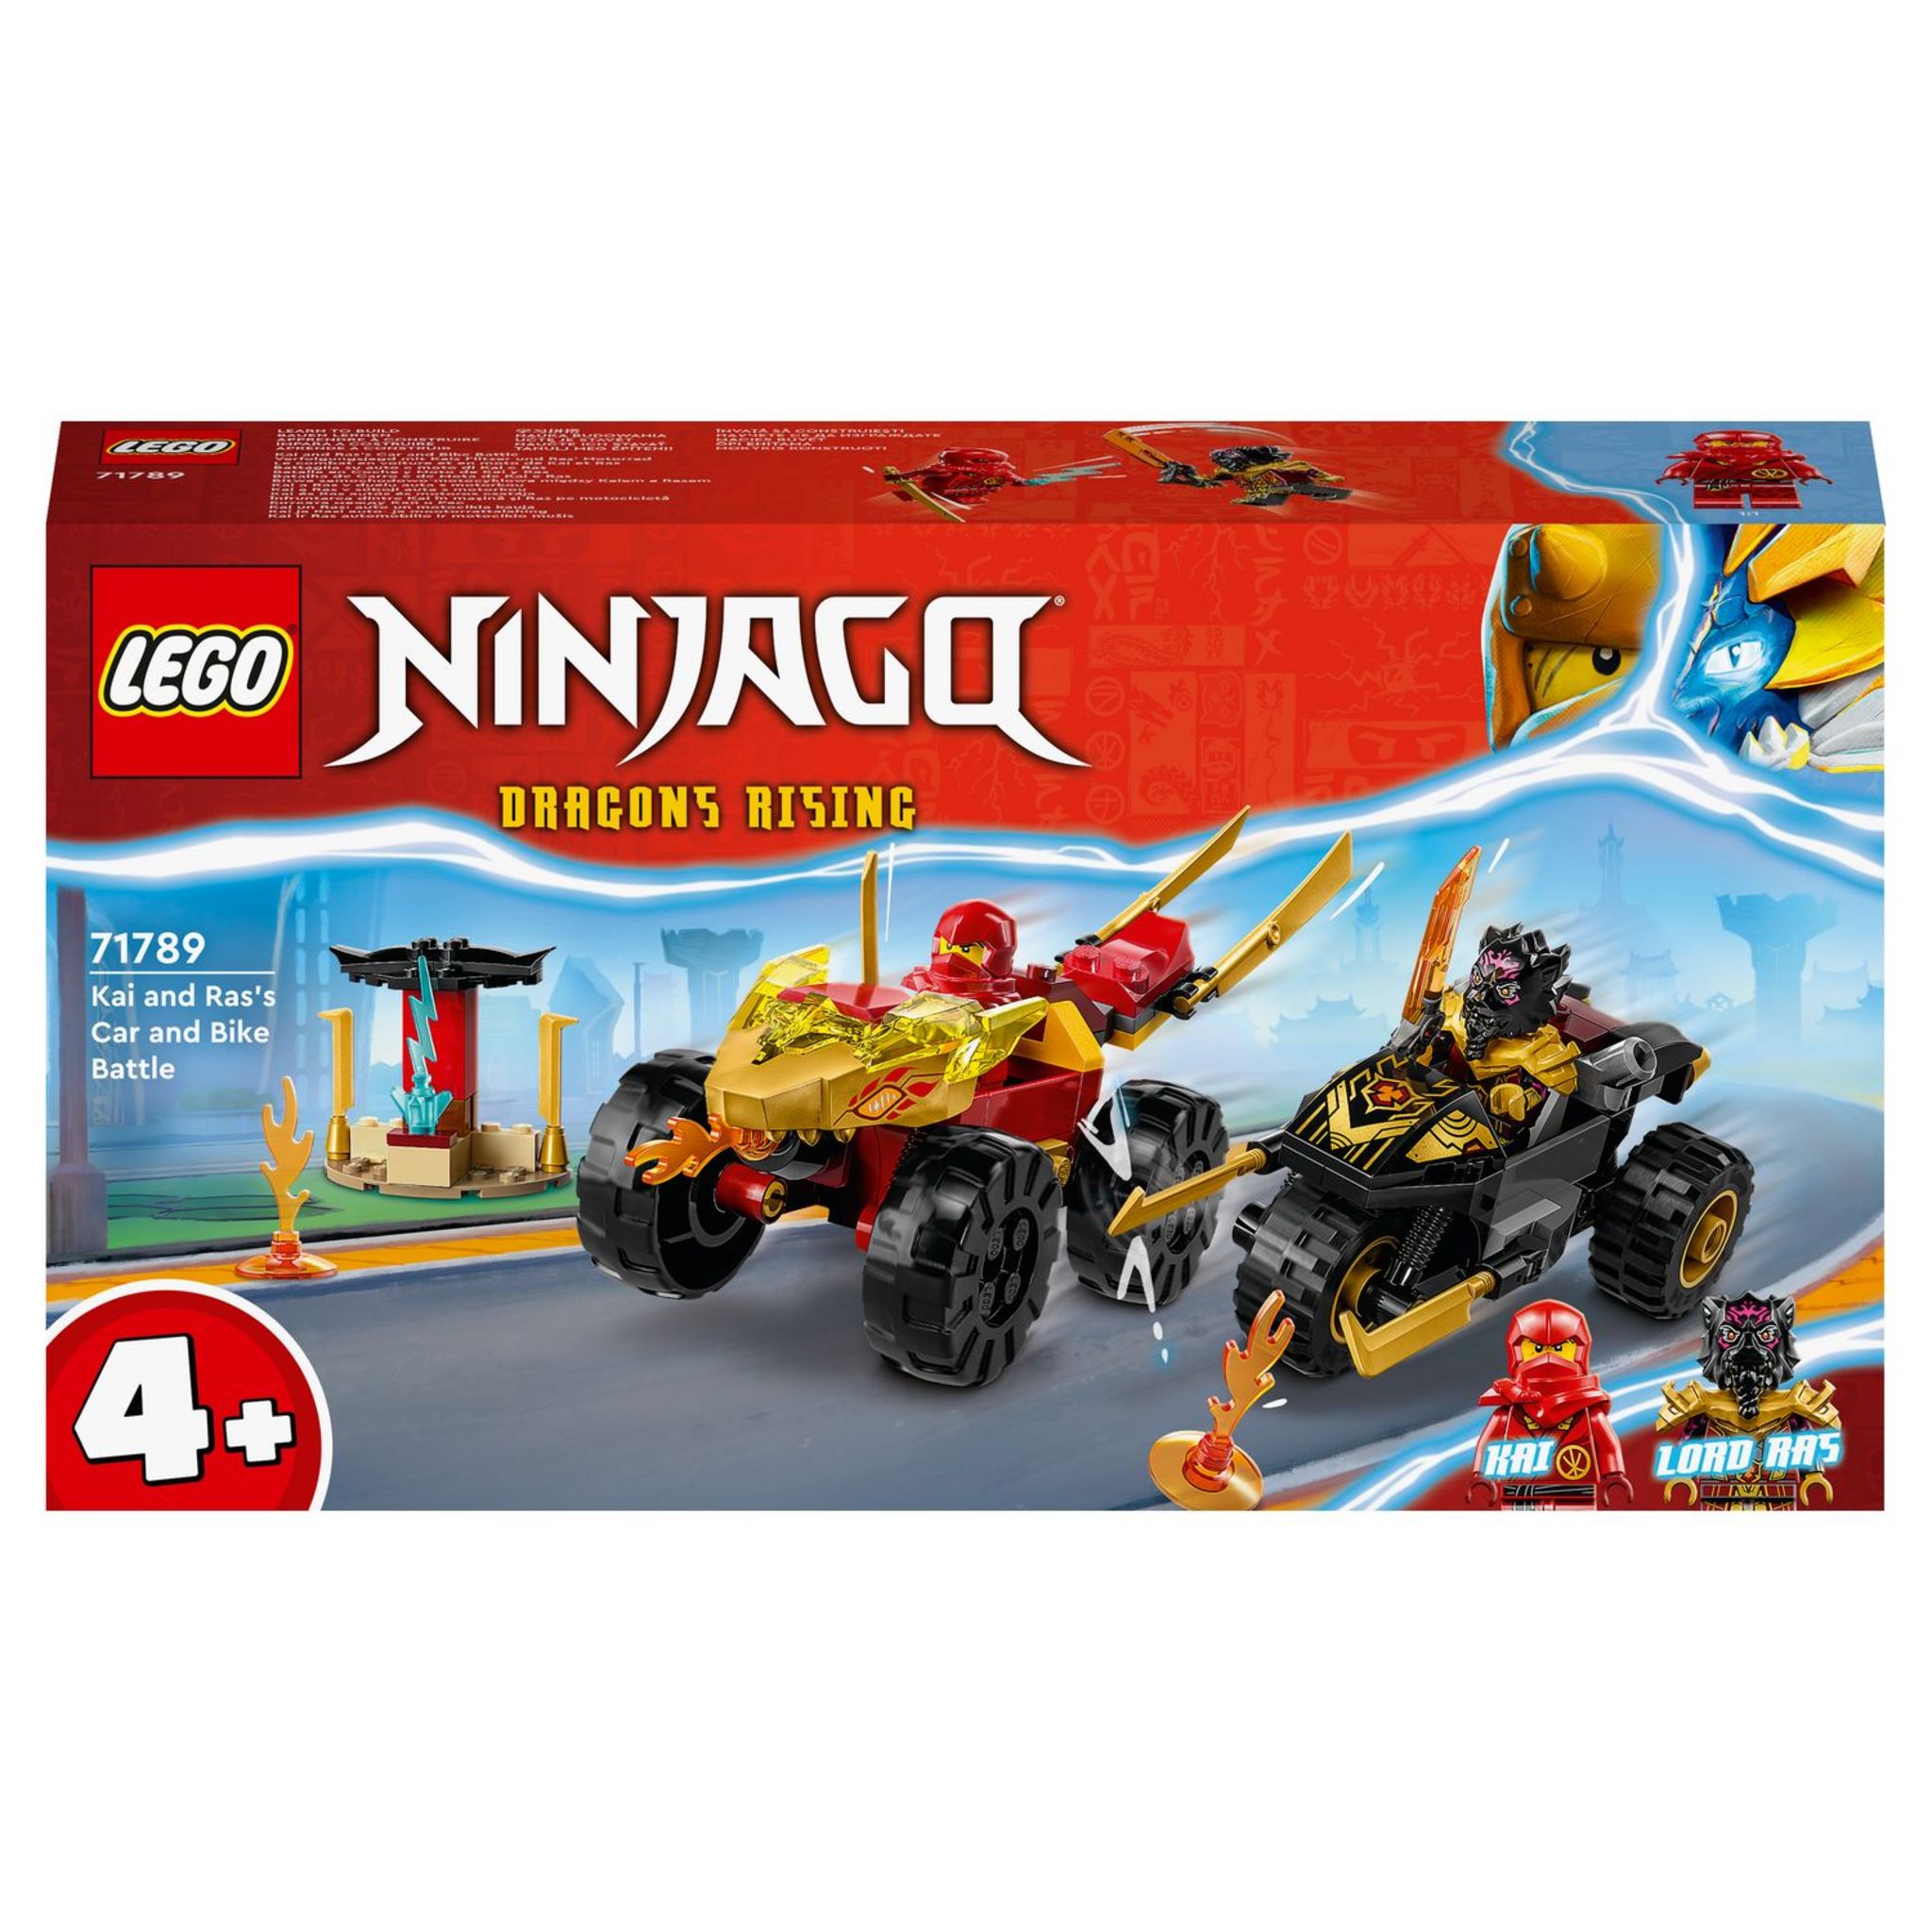 LEGO Ninjago 71787 pas cher, La boîte de briques créatives ninja